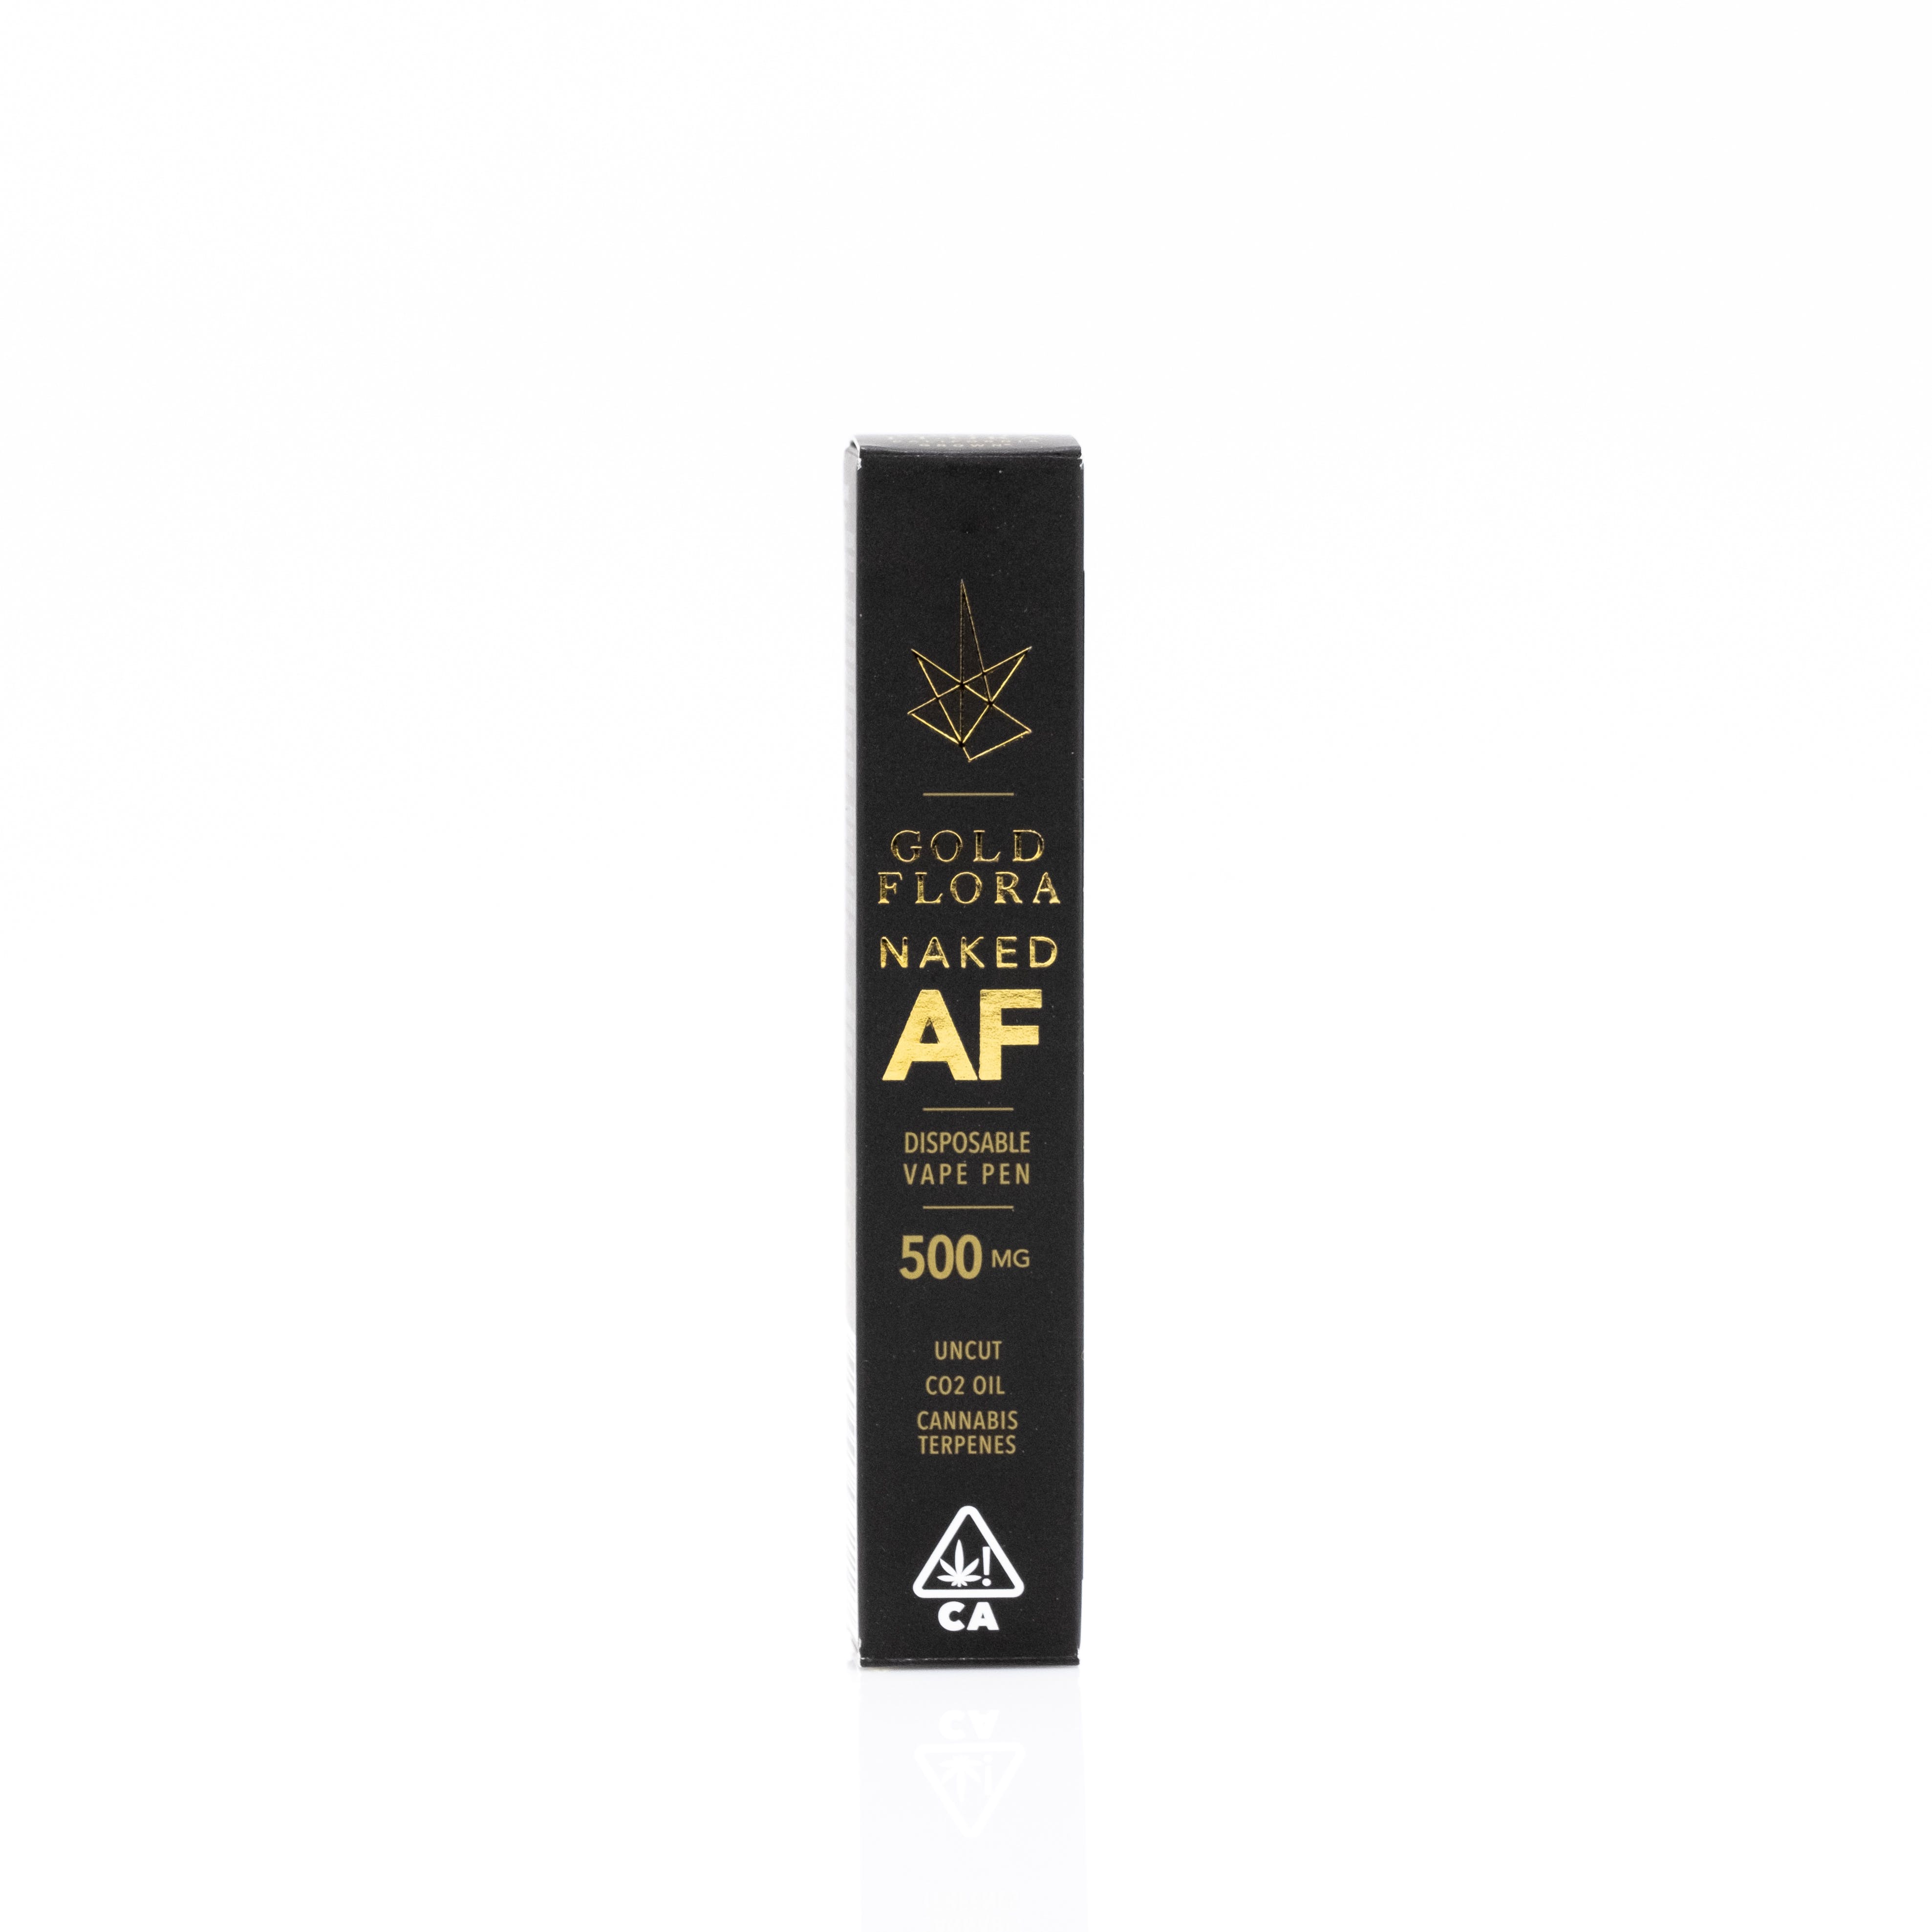 Naked AF Hybrid Disposable Vape Pen (.5g) - Gold Flora